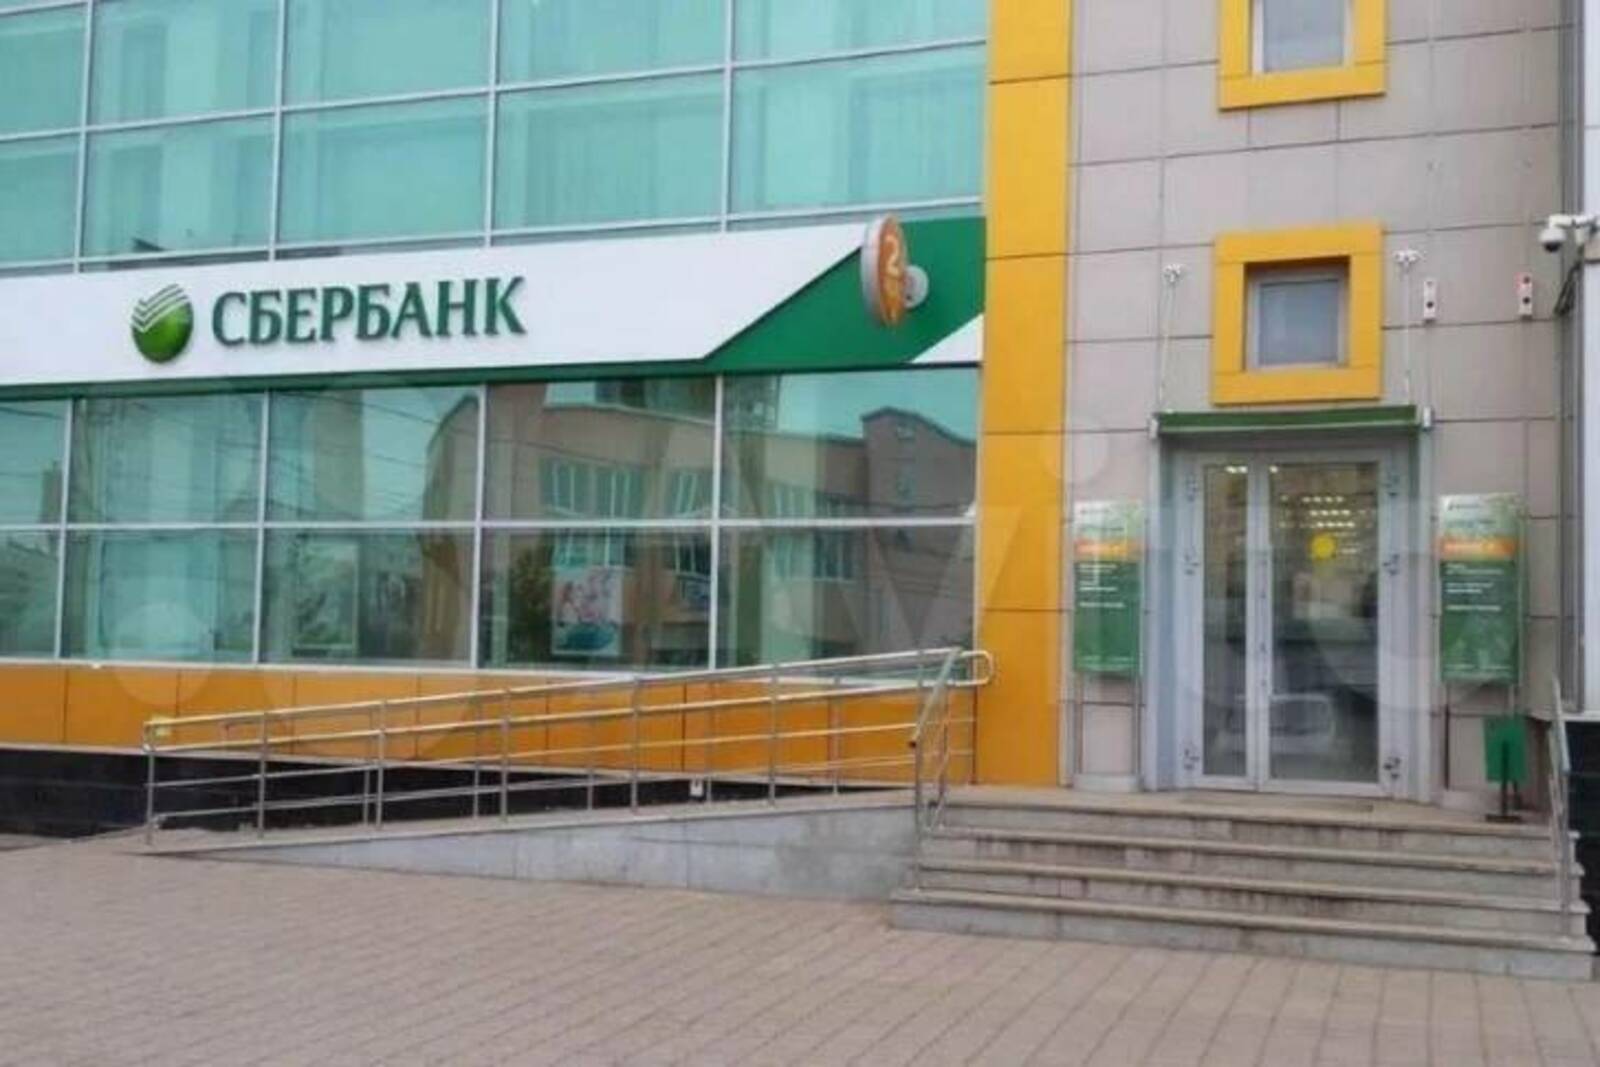 Российские банки сокращают офисы. Что это означает?